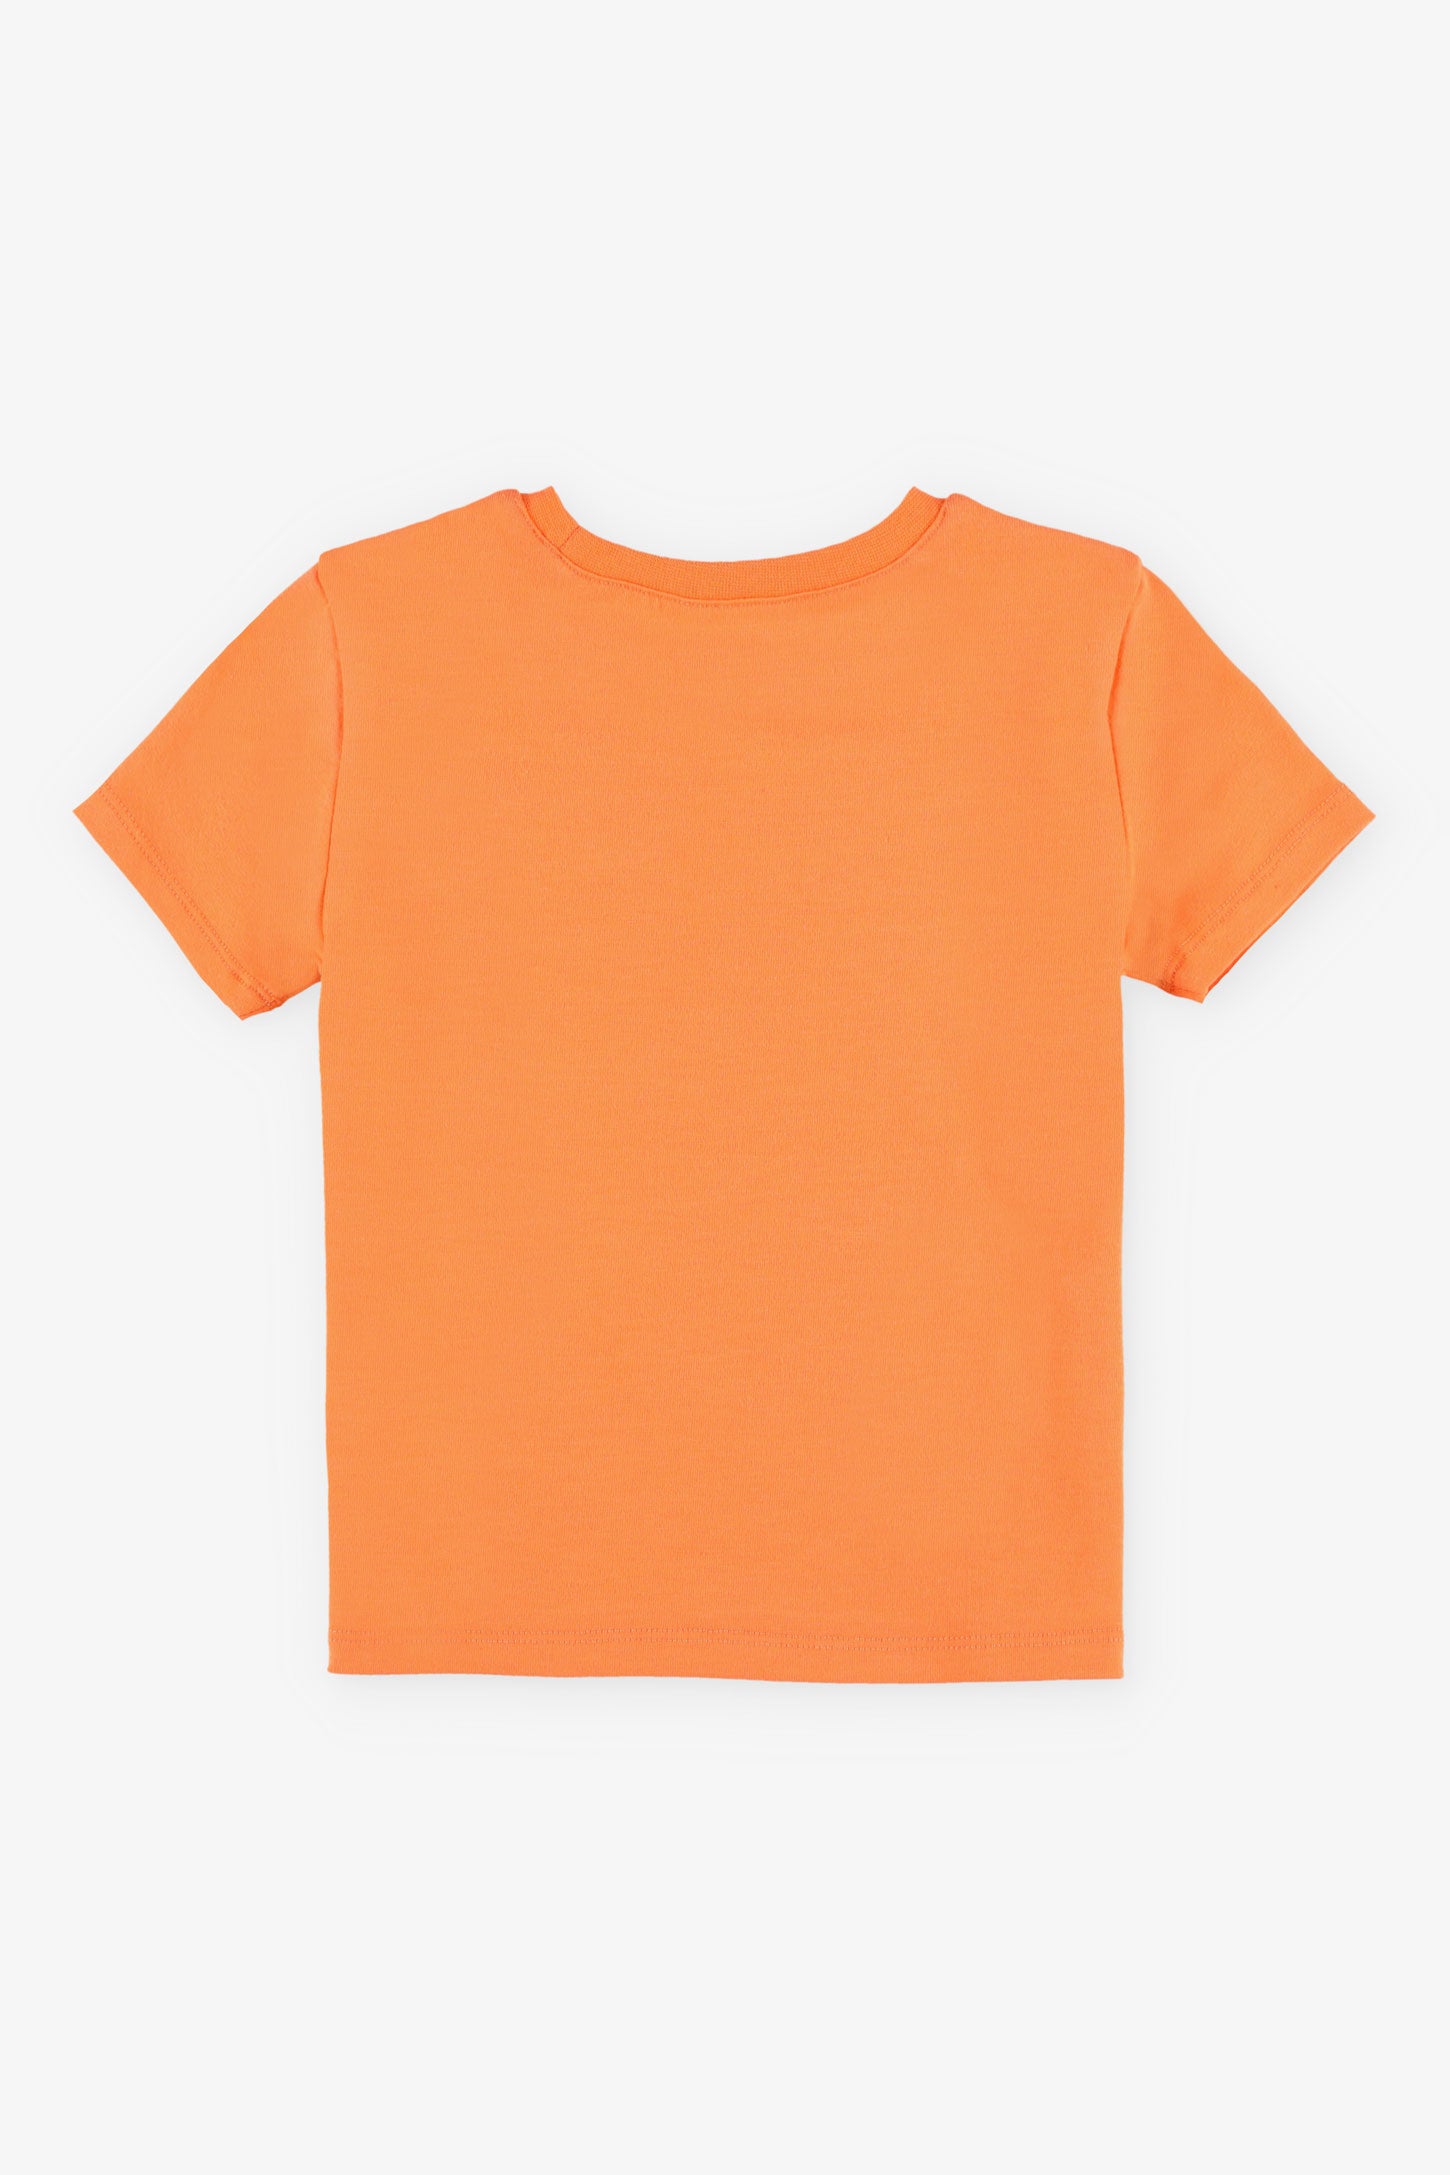 T-shirt rond coupe droite coton, 2T-3T, 2/15$ - Bébé garçon && ORANGE